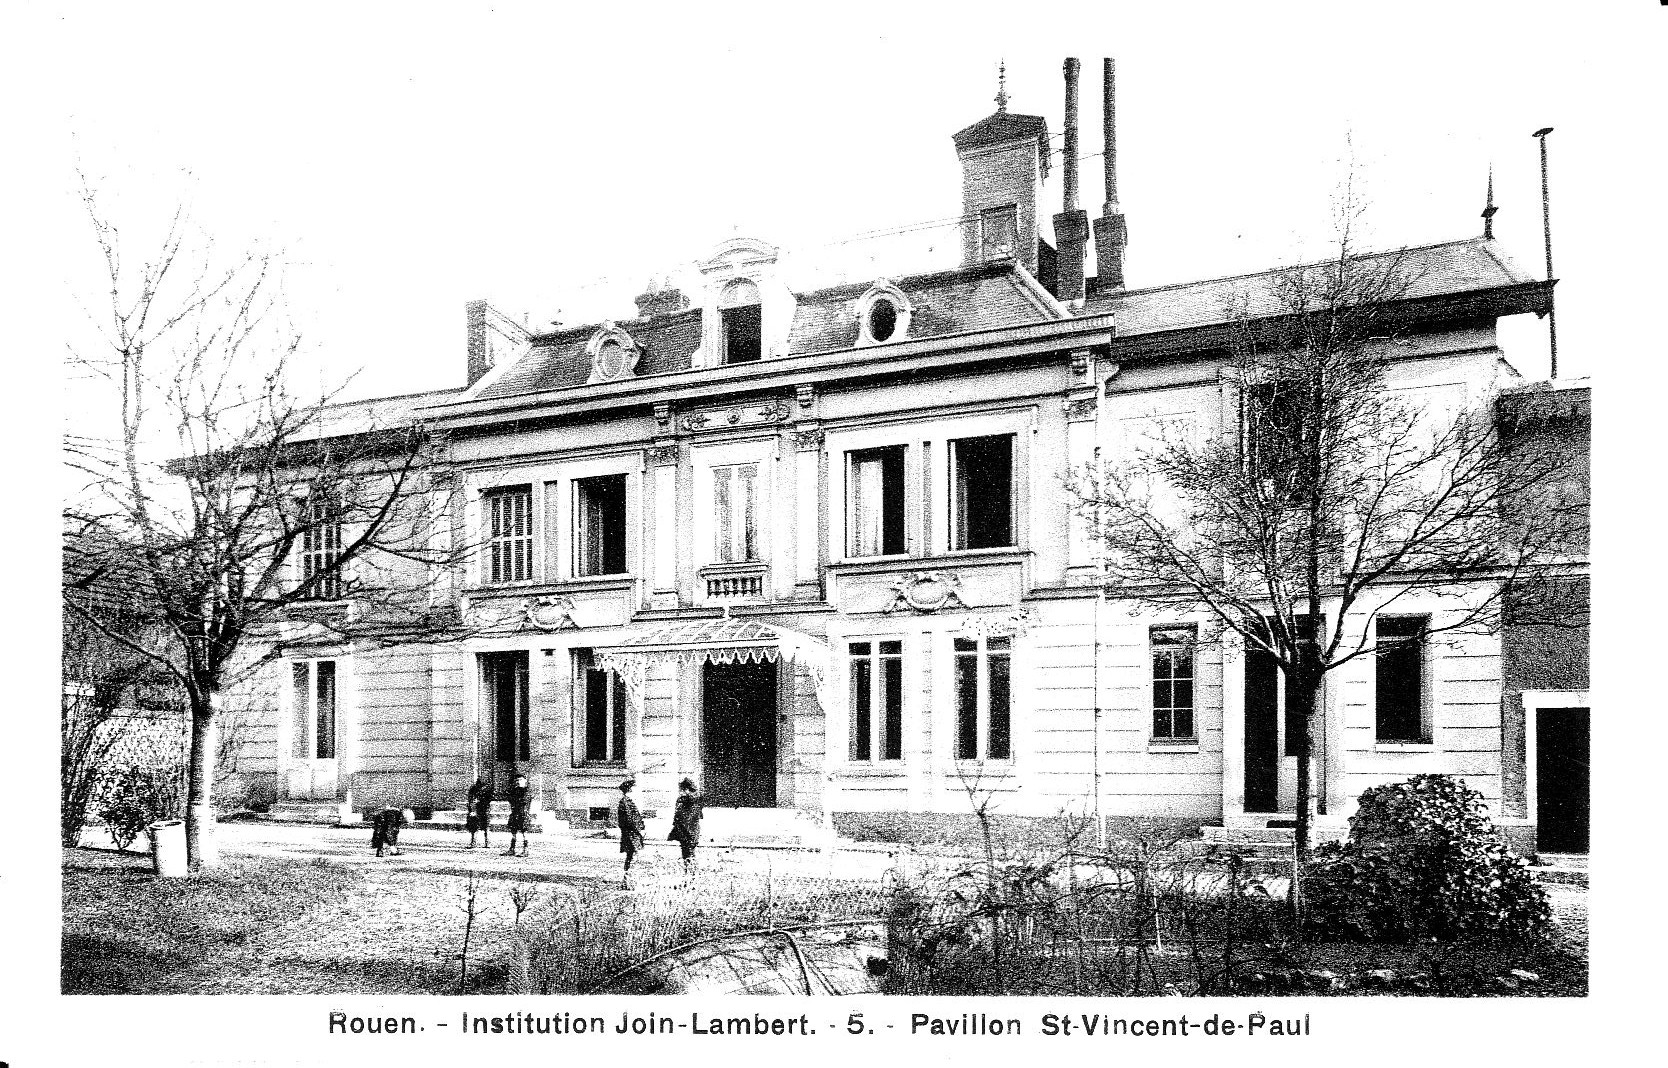 Le pavillon Saint-Vincent-de-Paul